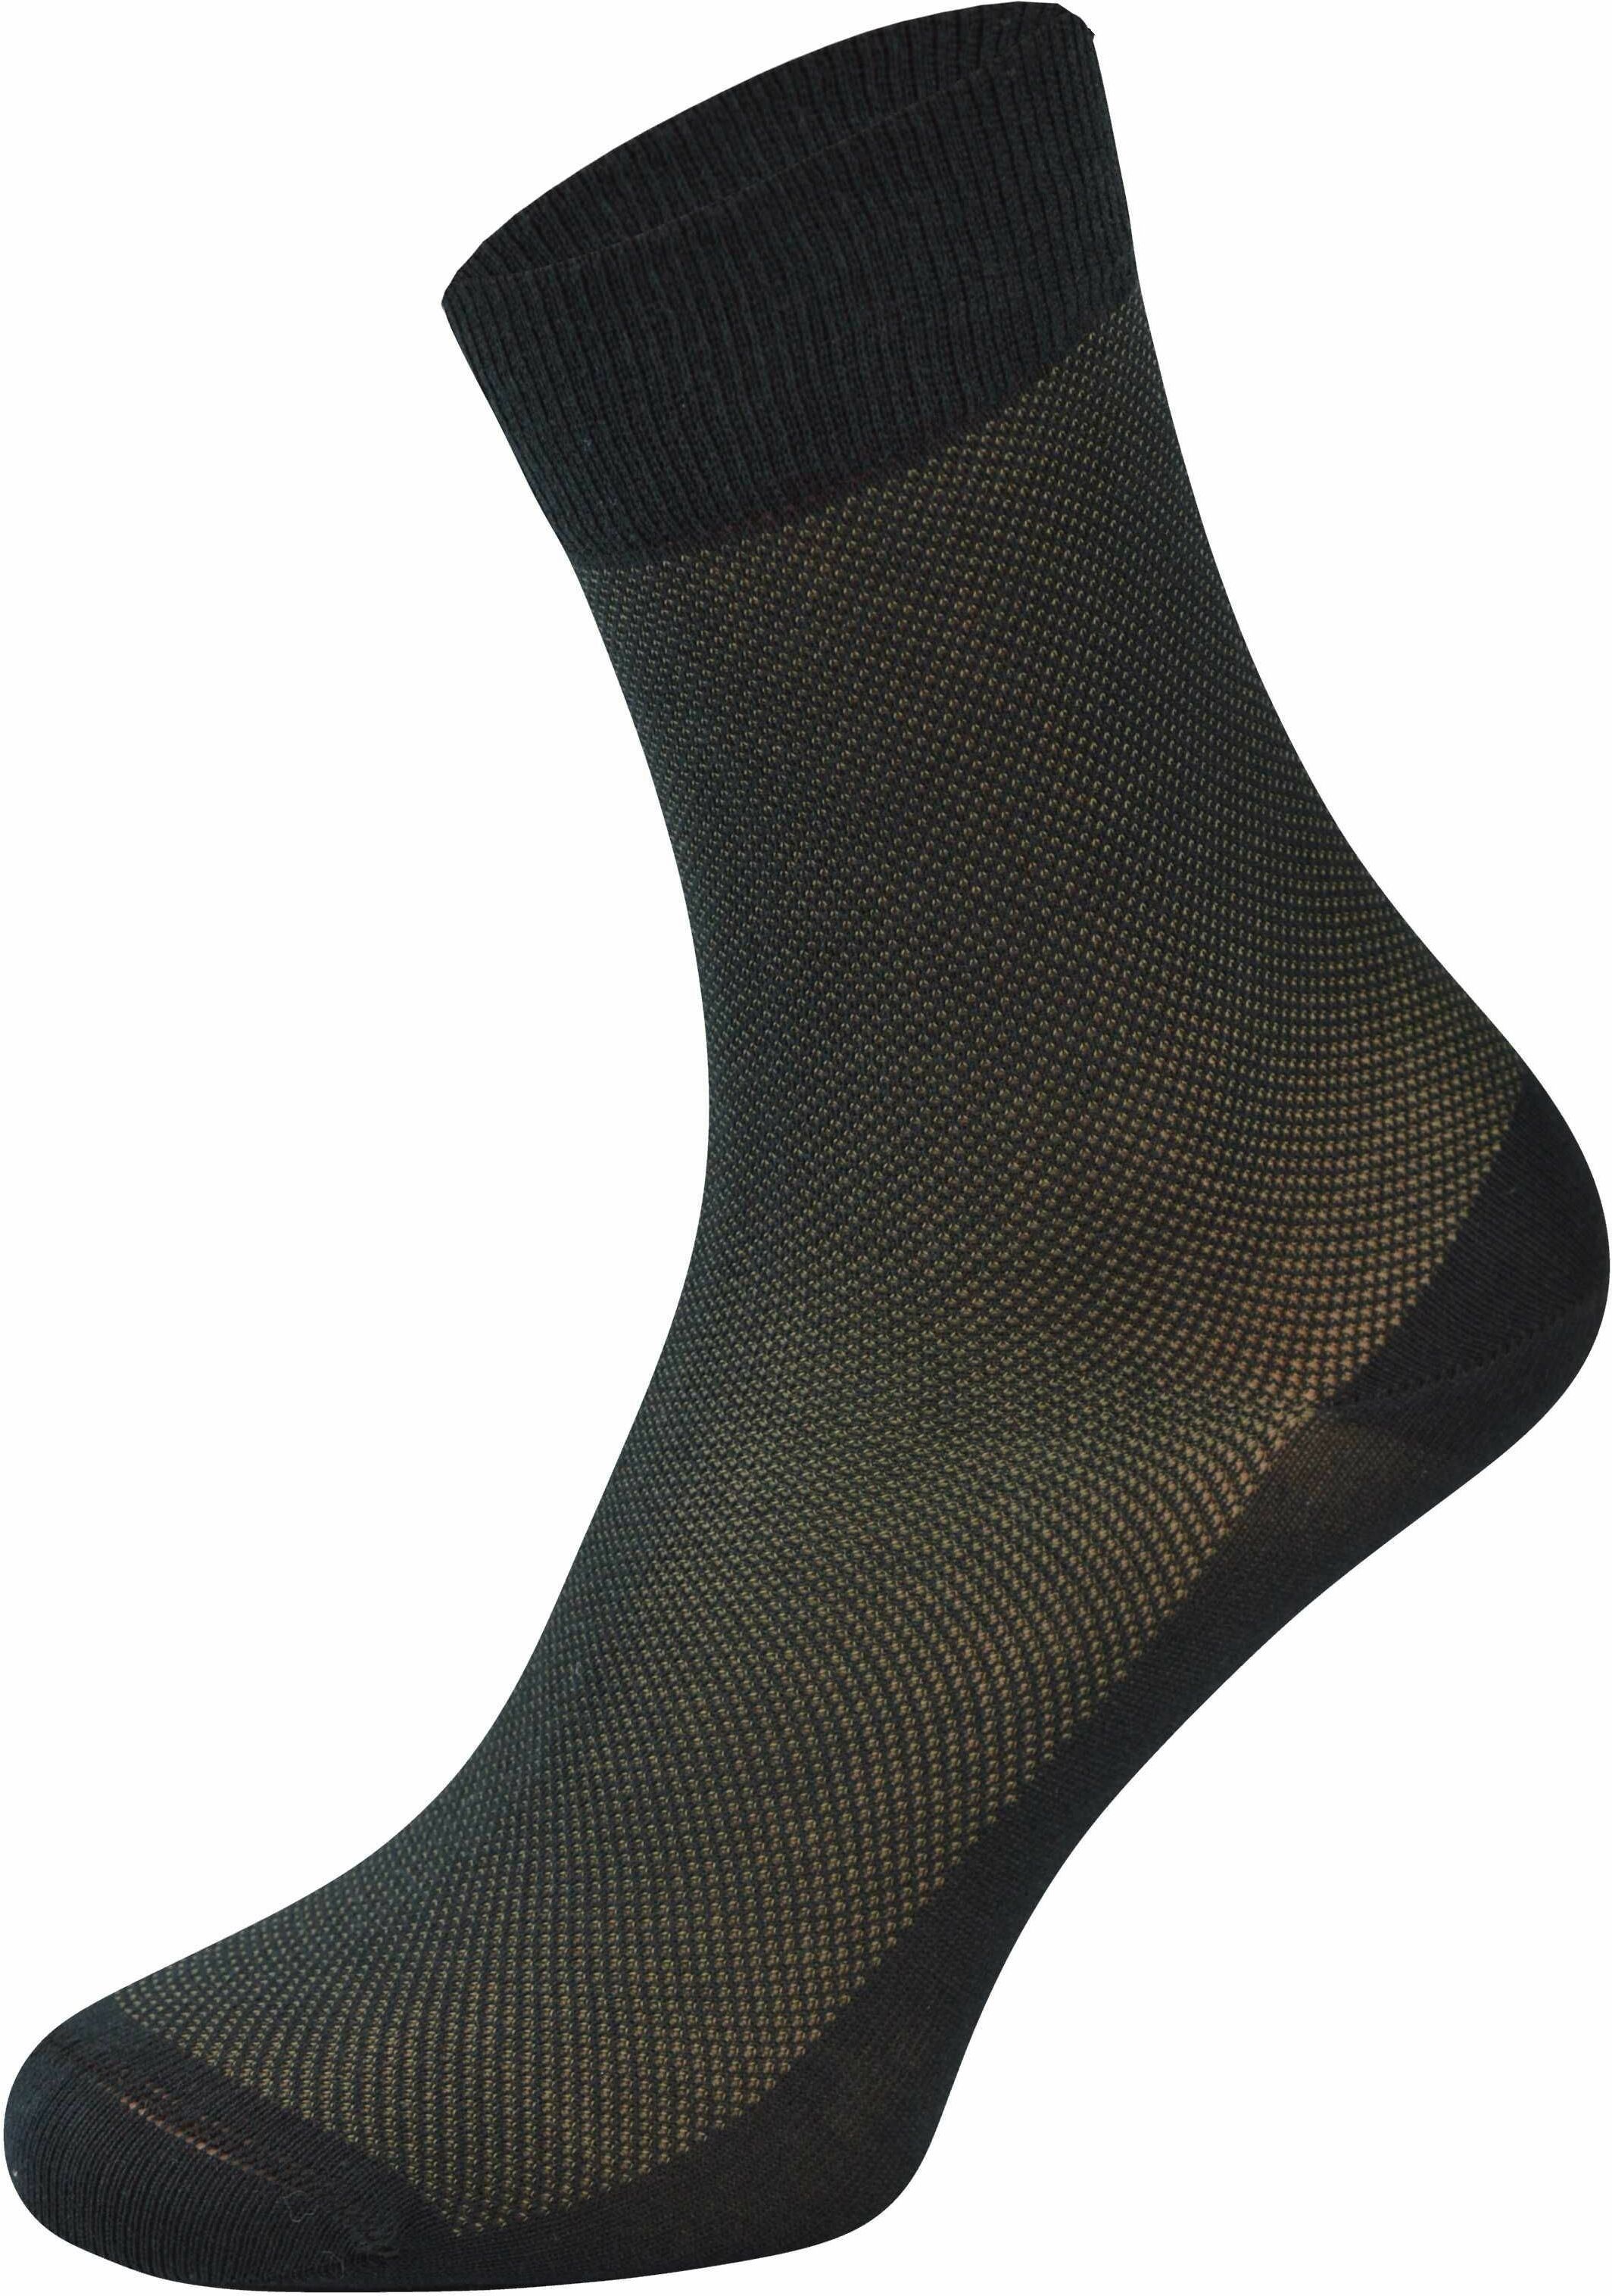 Chili Socks Eksluzywne skarpety klasyczne z bawełny Merceryzowanej